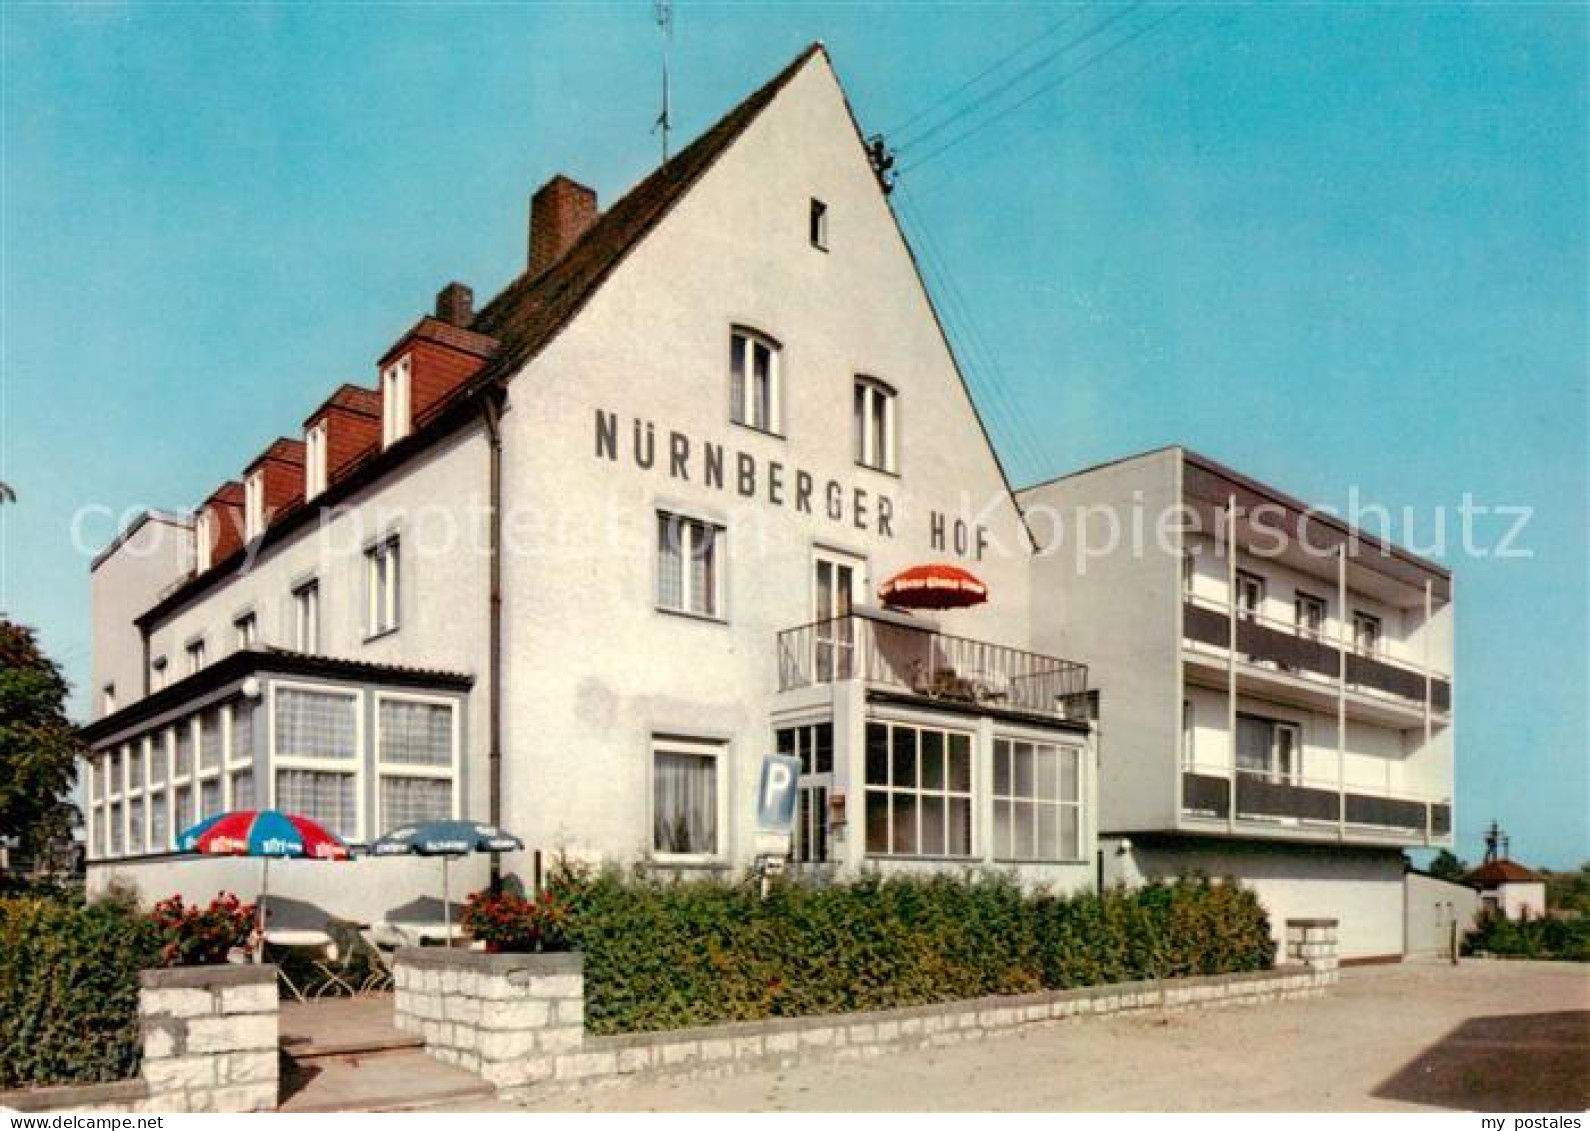 73862377 Neumarkt Oberpfalz Hotel Restaurant Nuernberger Hof Neumarkt Oberpfalz - Neumarkt I. D. Oberpfalz